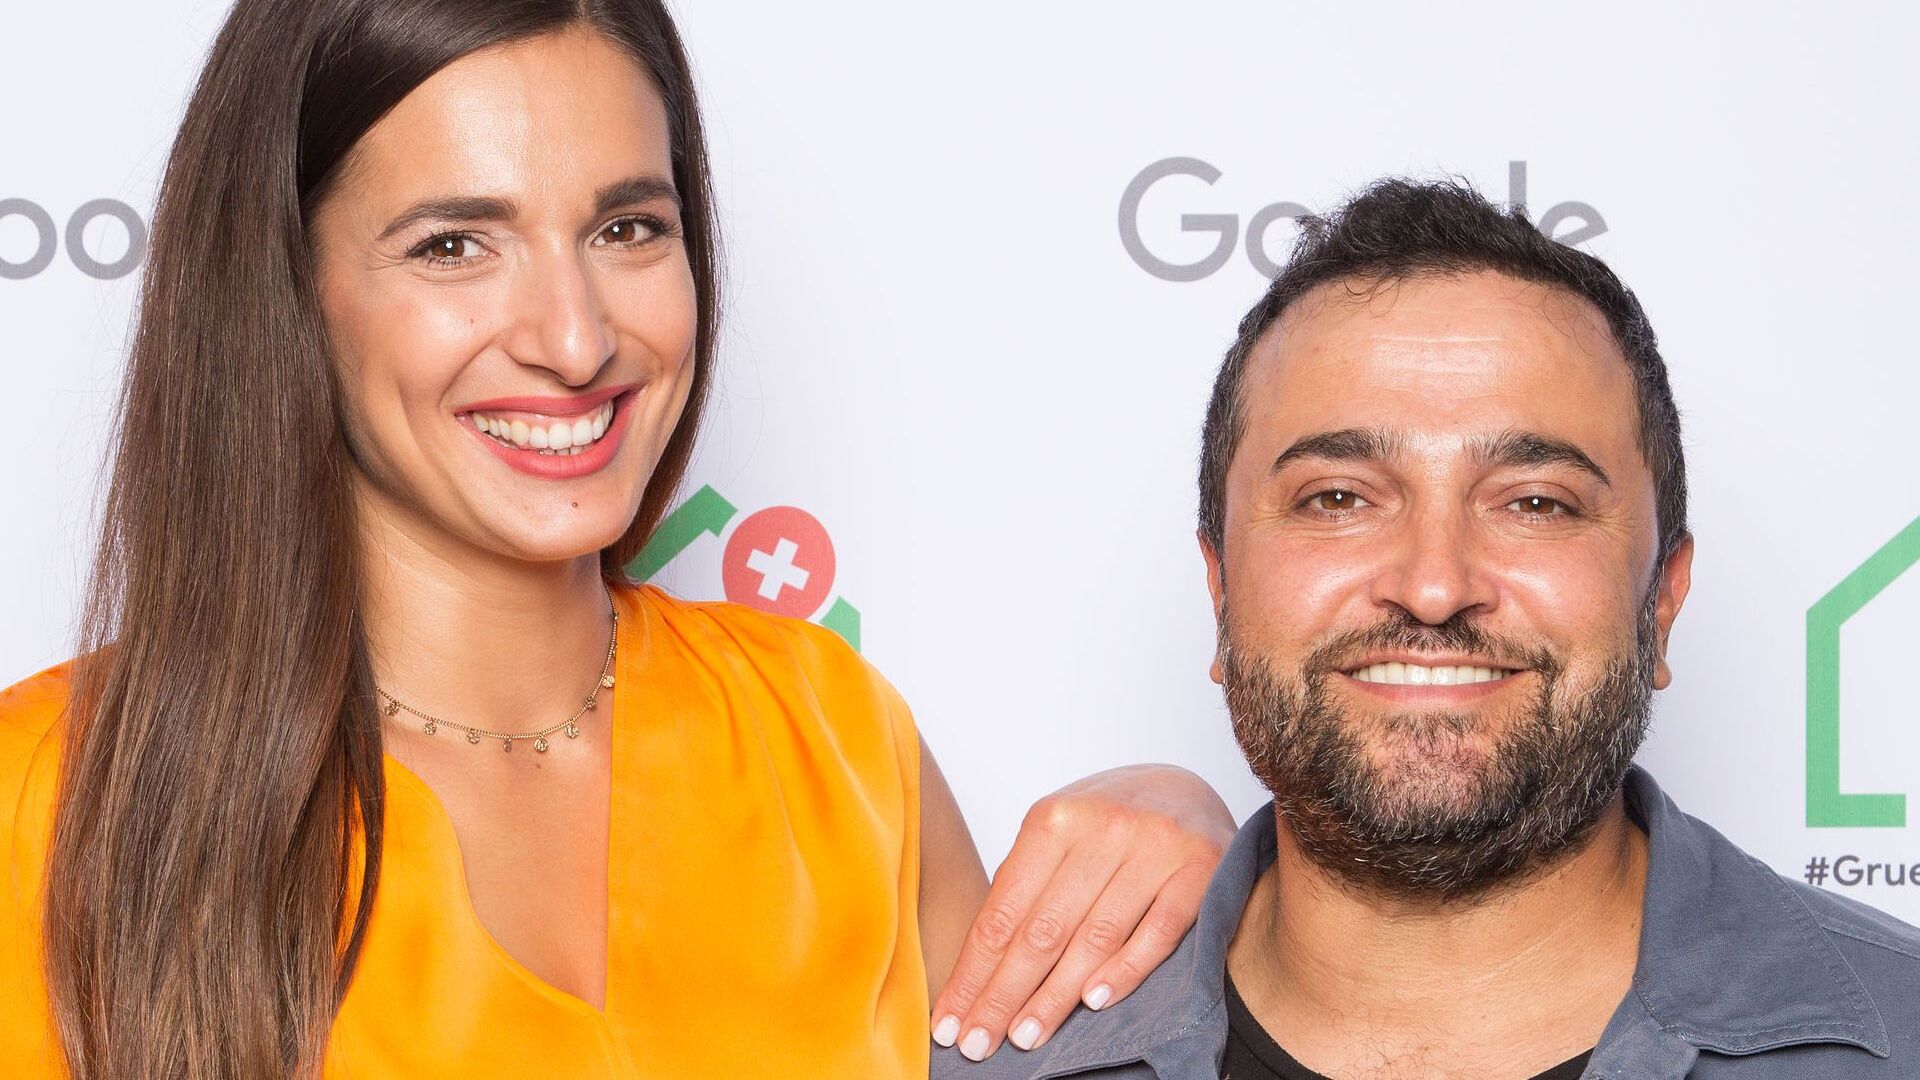 Sally z Sally's Welt (kanał YouTube) z mężem Muratem: uczestniczyła w oficjalnej inauguracji nowego kampusu Europaallee Google w Zurychu 27 czerwca 2022 r.